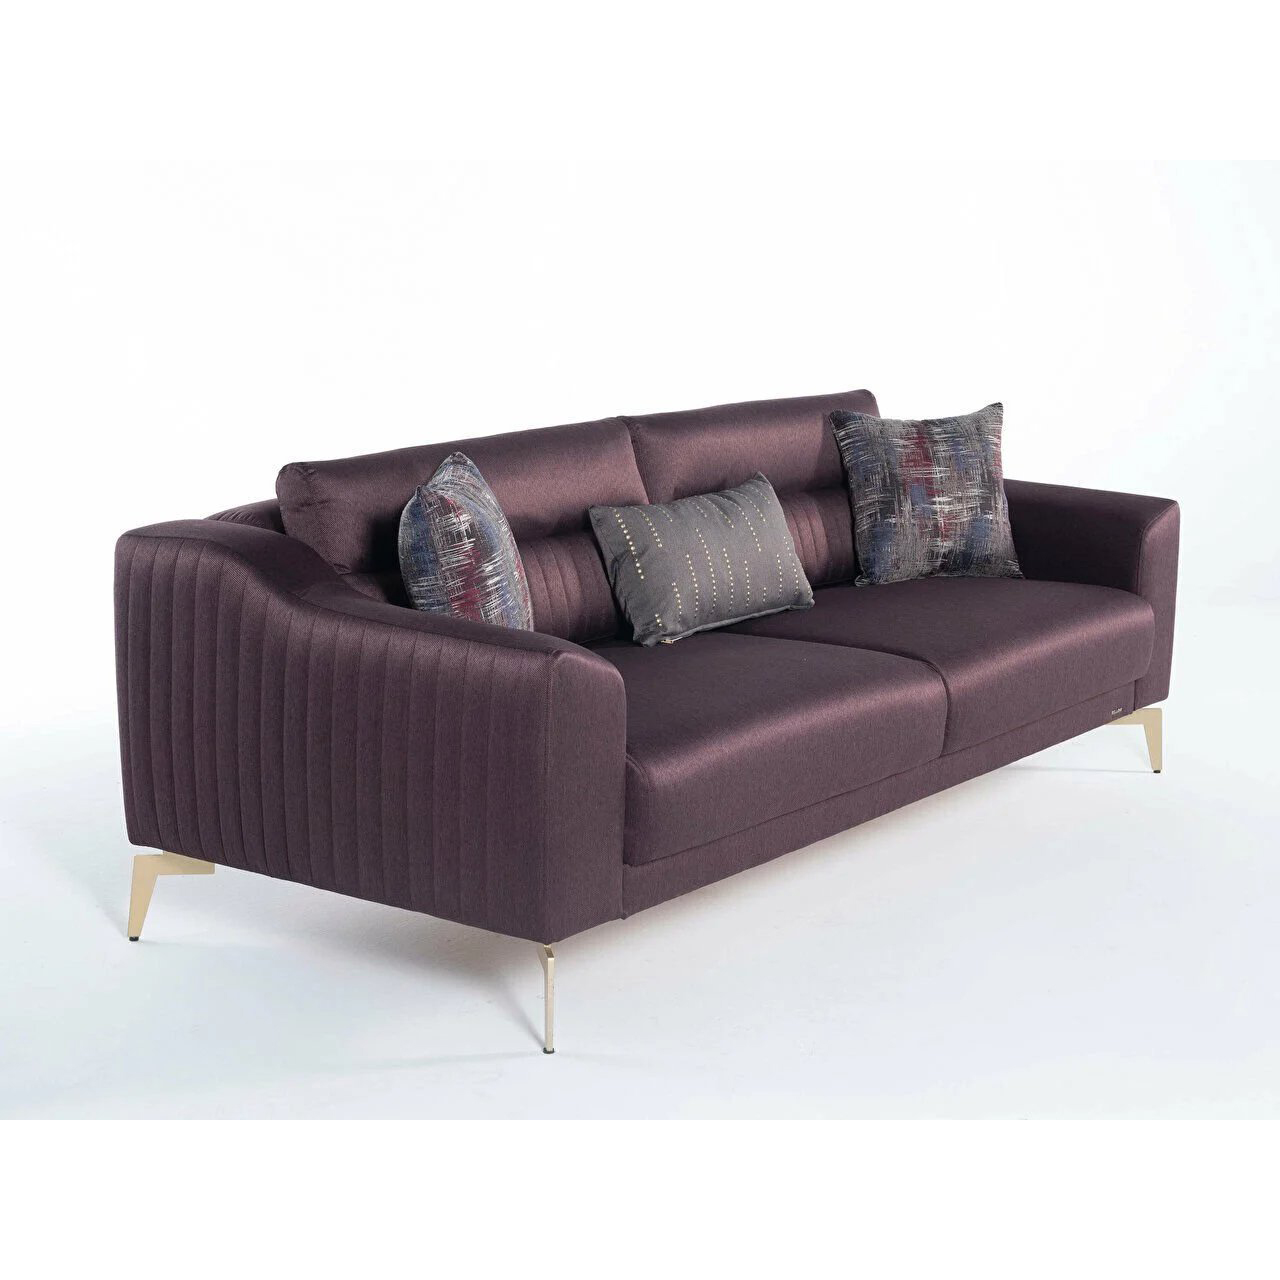 Диван-кровать 3х местный Bellona Fonte, цвет: коричнево-фиолетовый, ножки- беж, размер 225х100х80 см (FONT-03)FONT-03